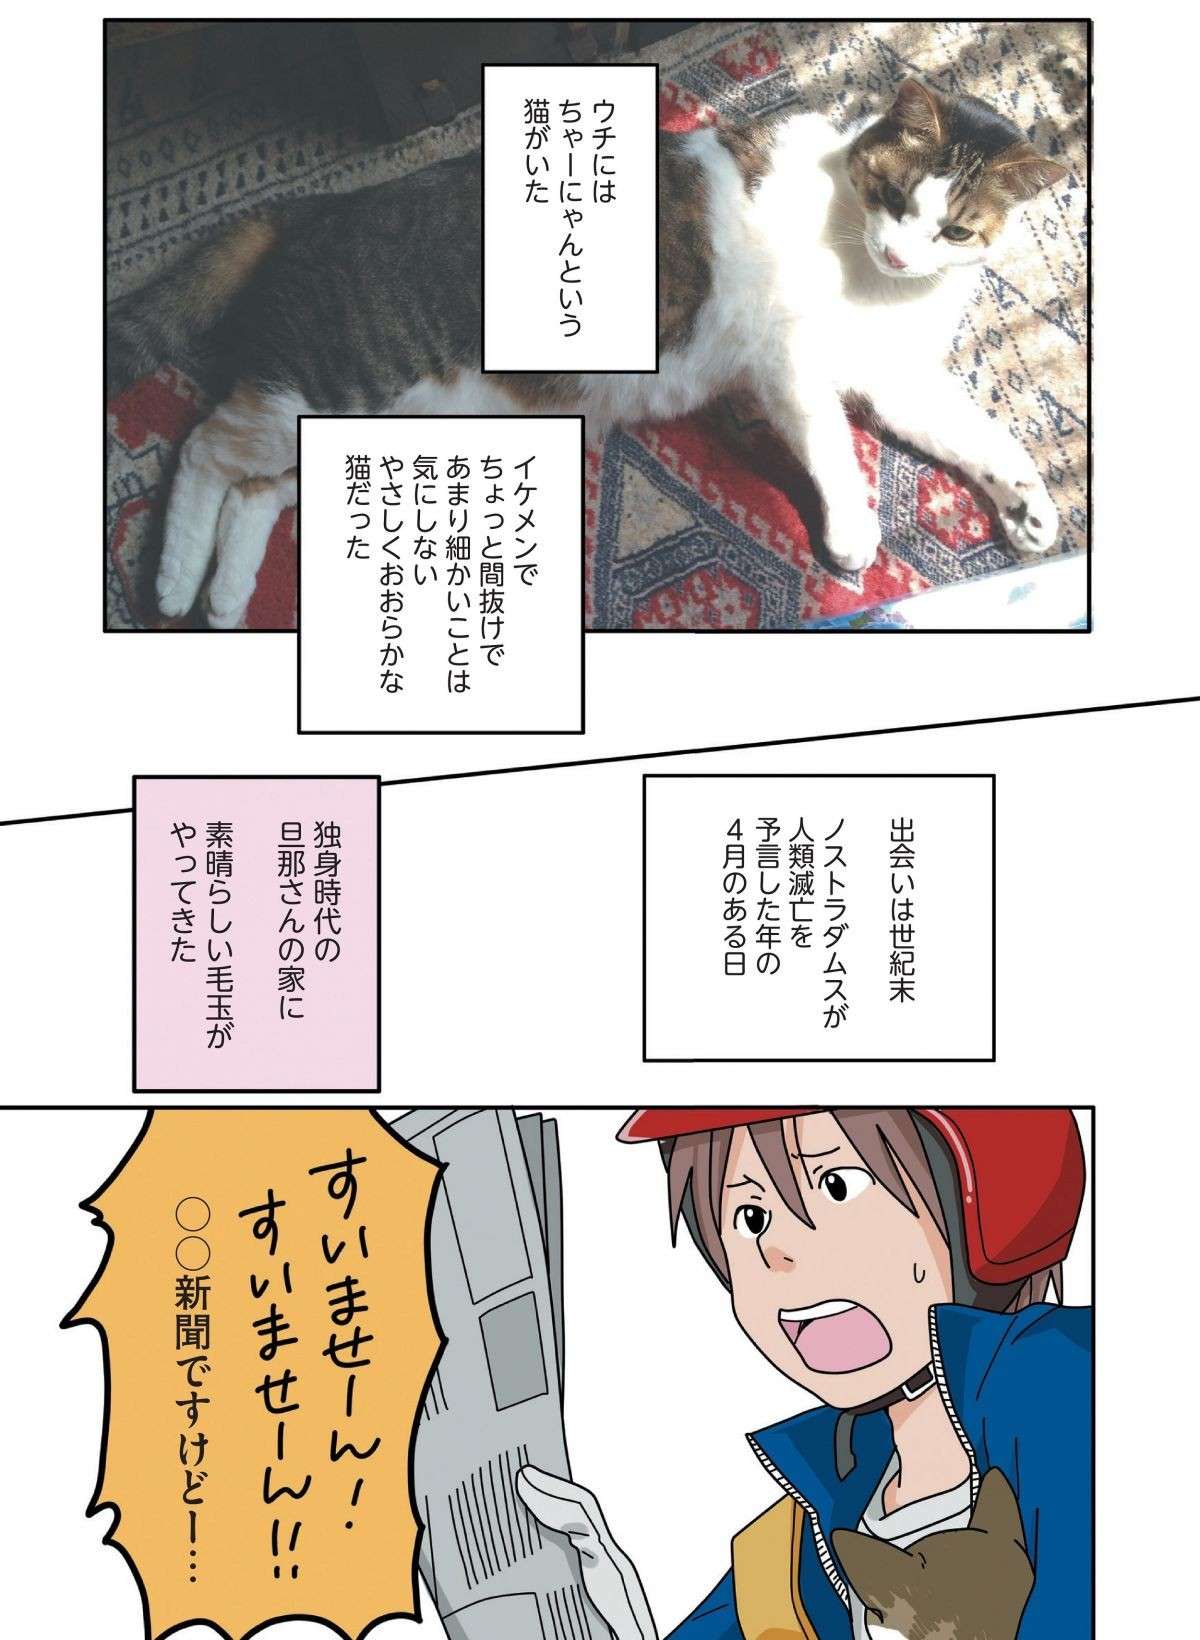 「もう猫は飼わない」と決めていた男性の家に、保護された子猫が...⁉／世界一幸せな飼い主にしてくれた猫 sekaiichishiawase1-1.jpg